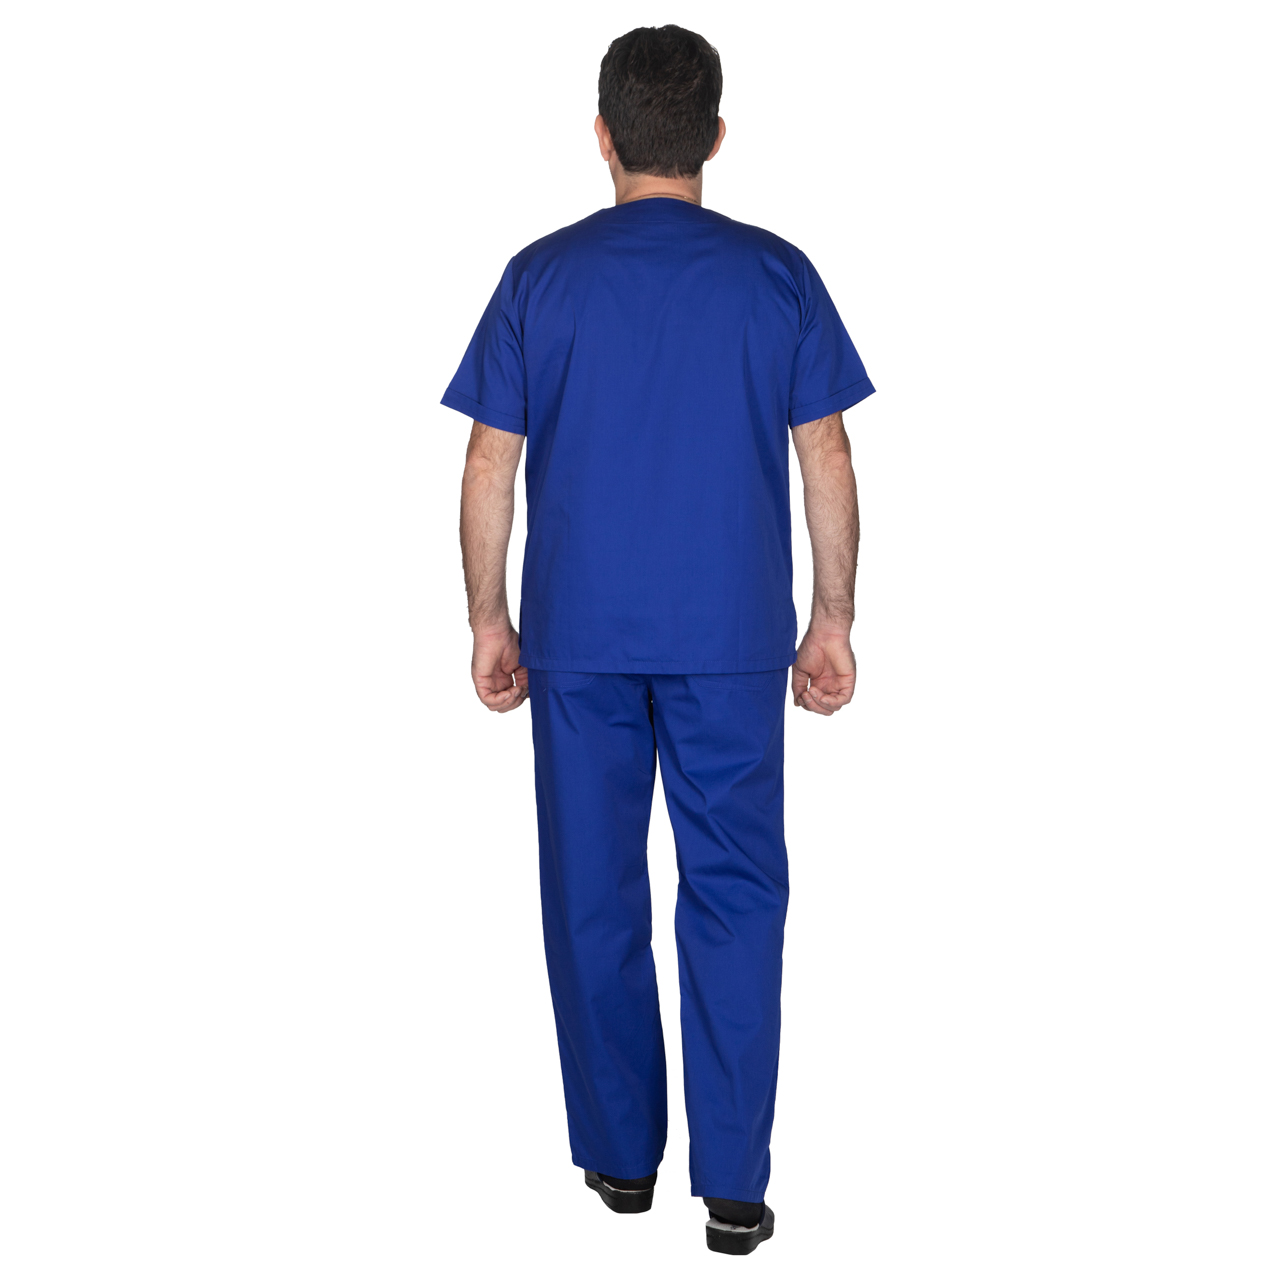 Ιατρική Στολή Μπλούζα - Παντελόνι (Σετ) Unisex Μπλέ 